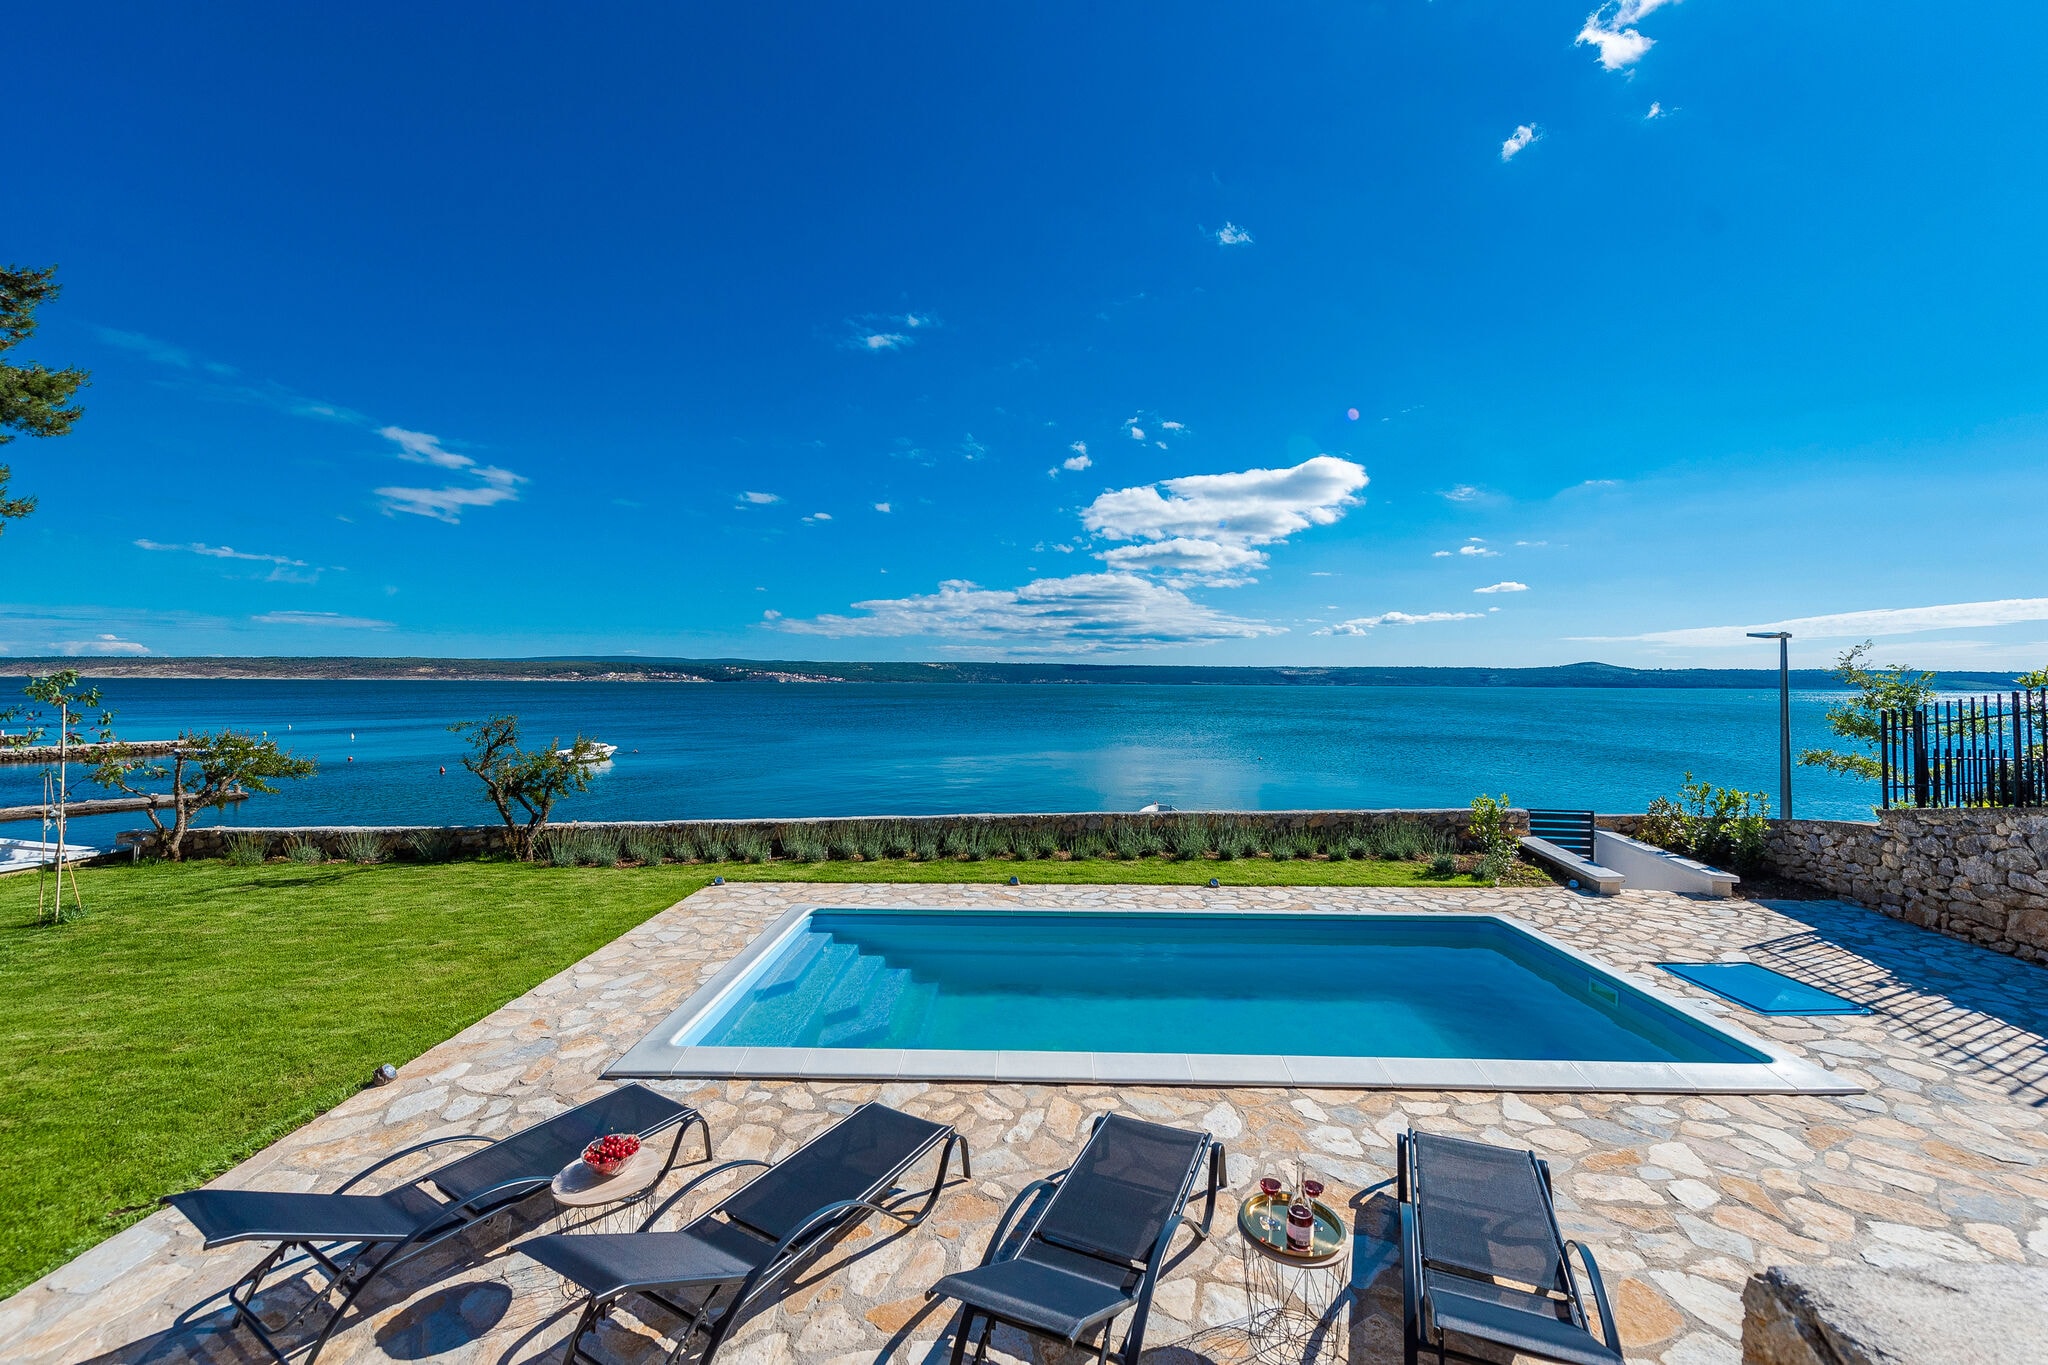 Moderne villa in Dalmatië met uitzicht op zee